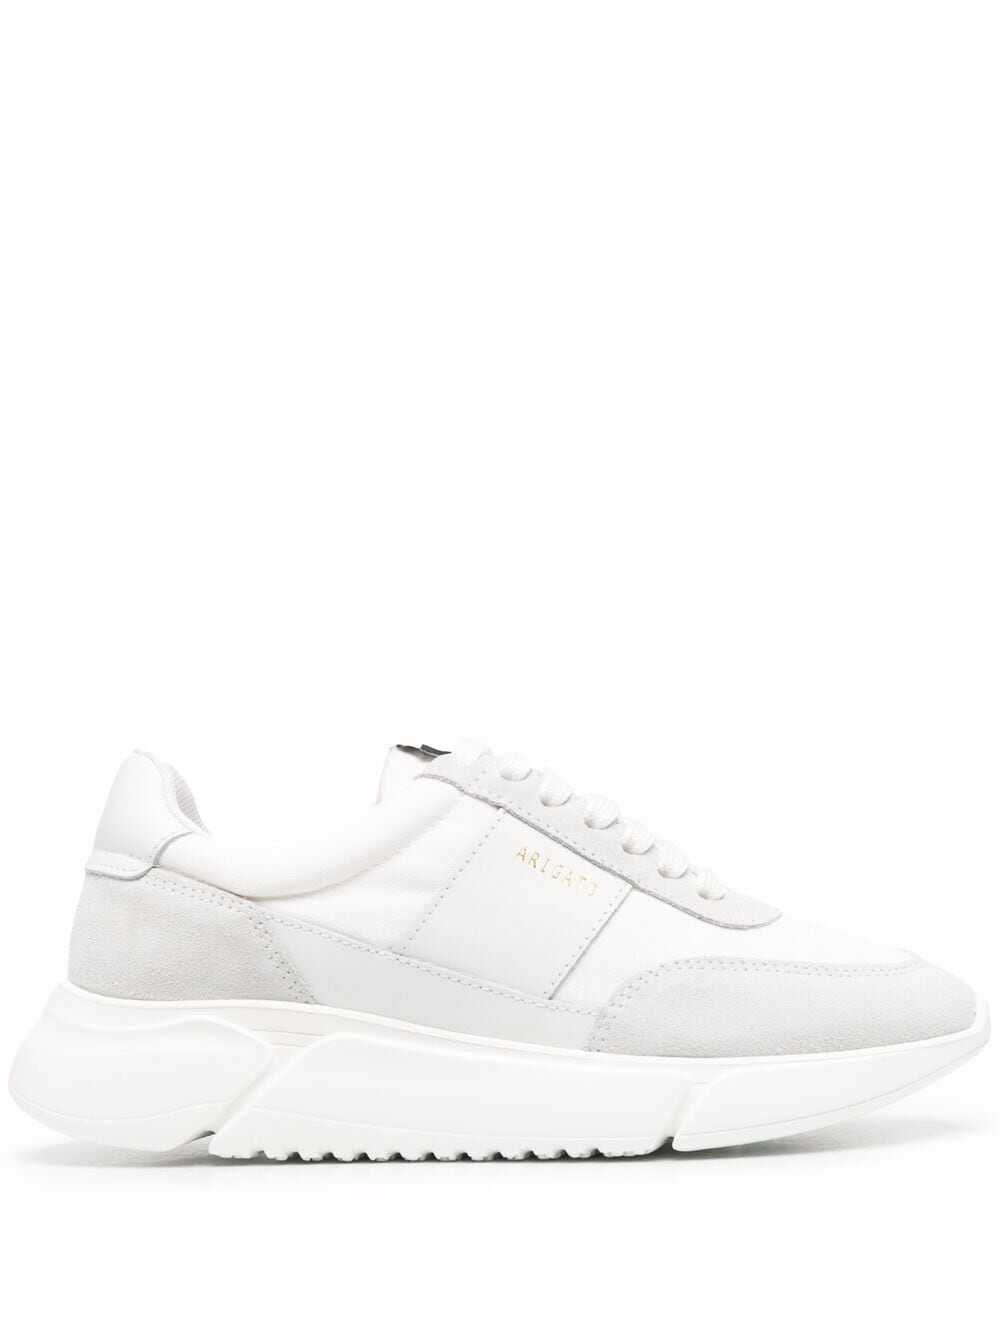 AXEL ARIGATO Sneakers White White image7